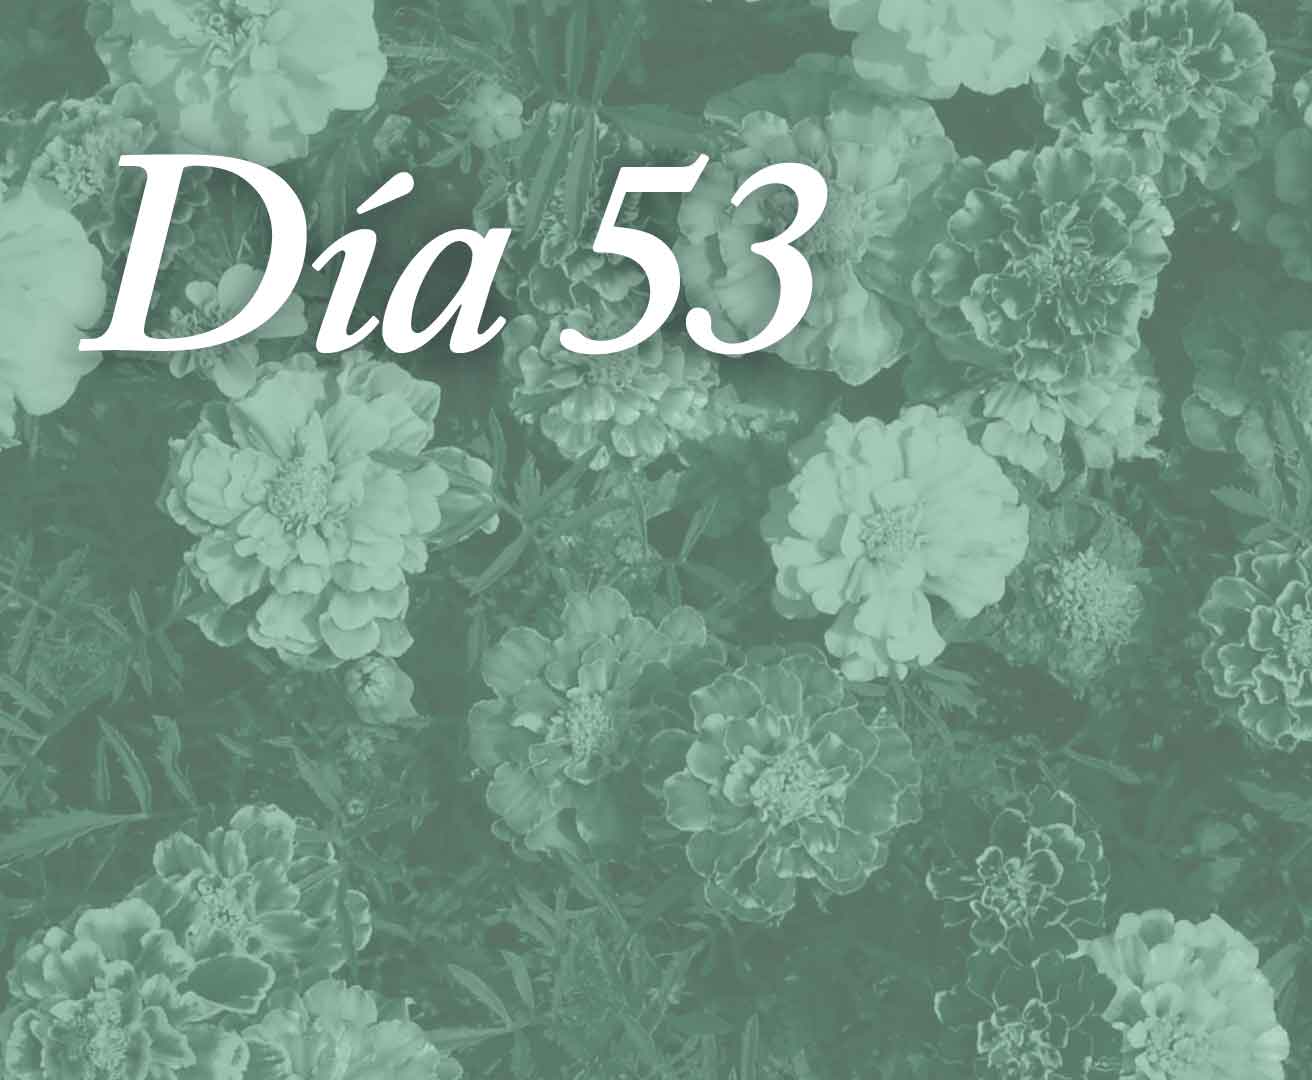 Día 53 - Cae tú en tu corazón